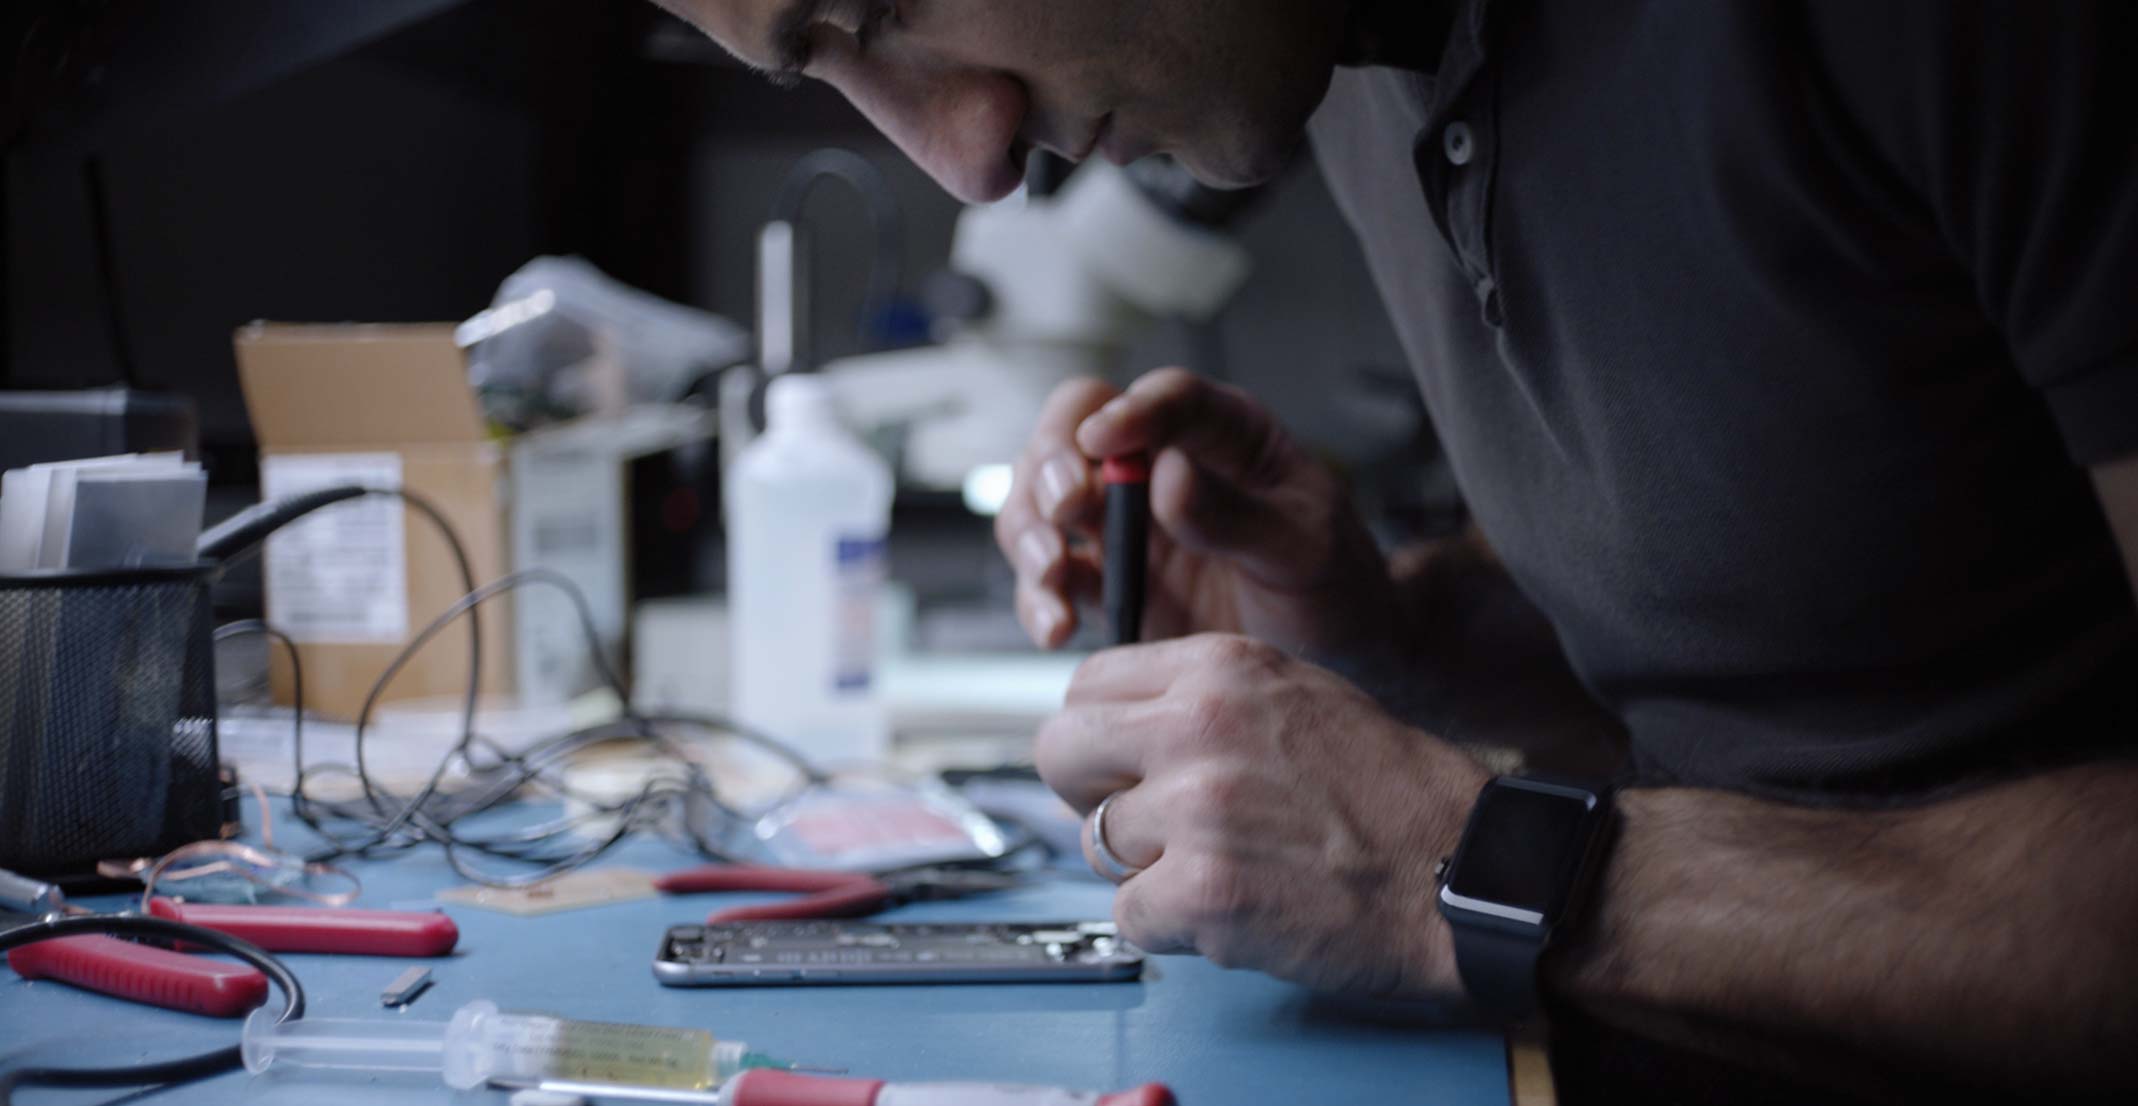 O Ehsan, gerente de engenharia do grupo de Sensing Product Design da Apple, trabalha em um iPhone em um laboratório de engenharia.